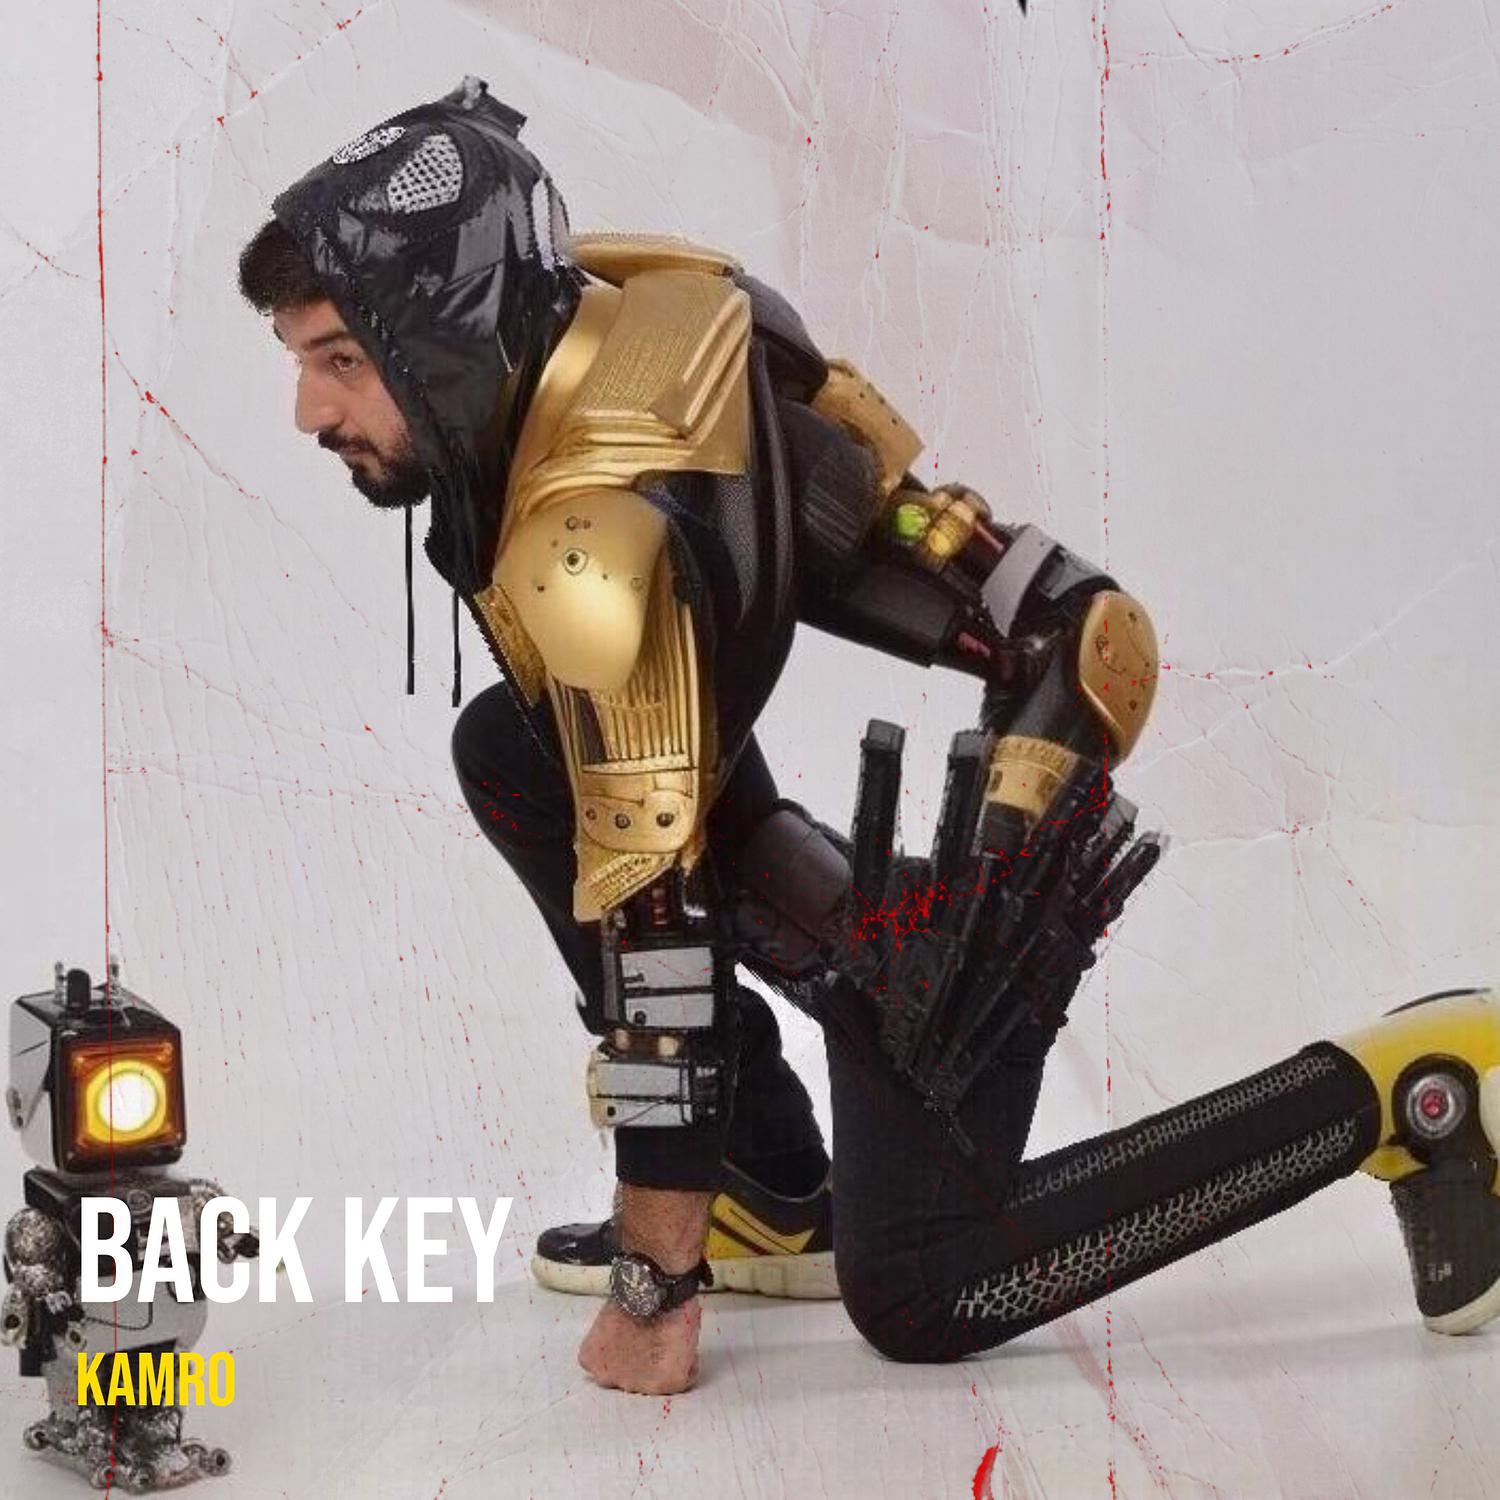 Kamro - Back Key